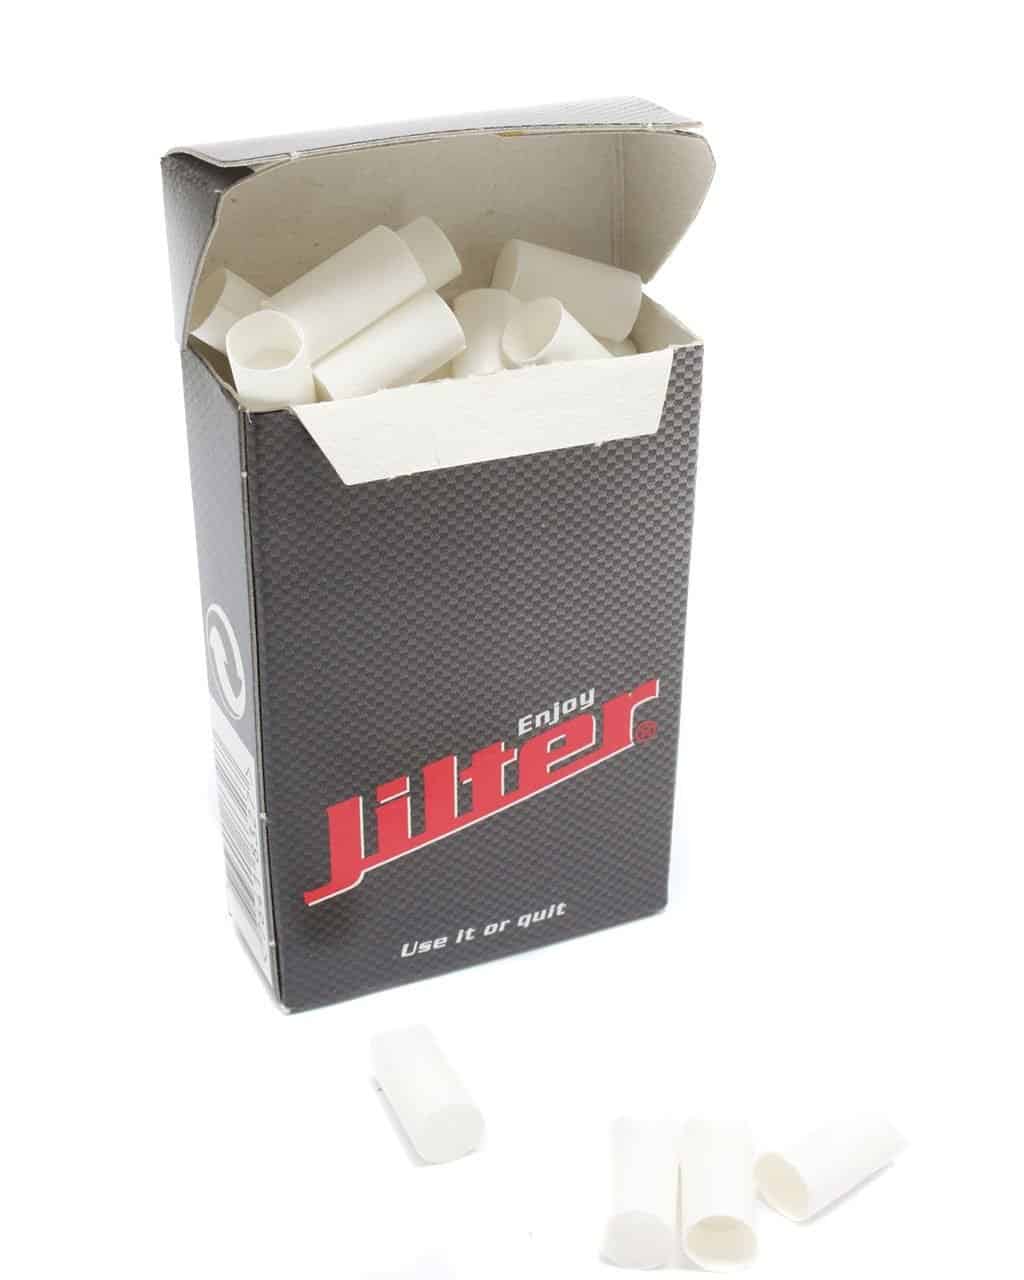 Filtro e carbone attivo JILTER Filtro per sigarette | 42 pezzi